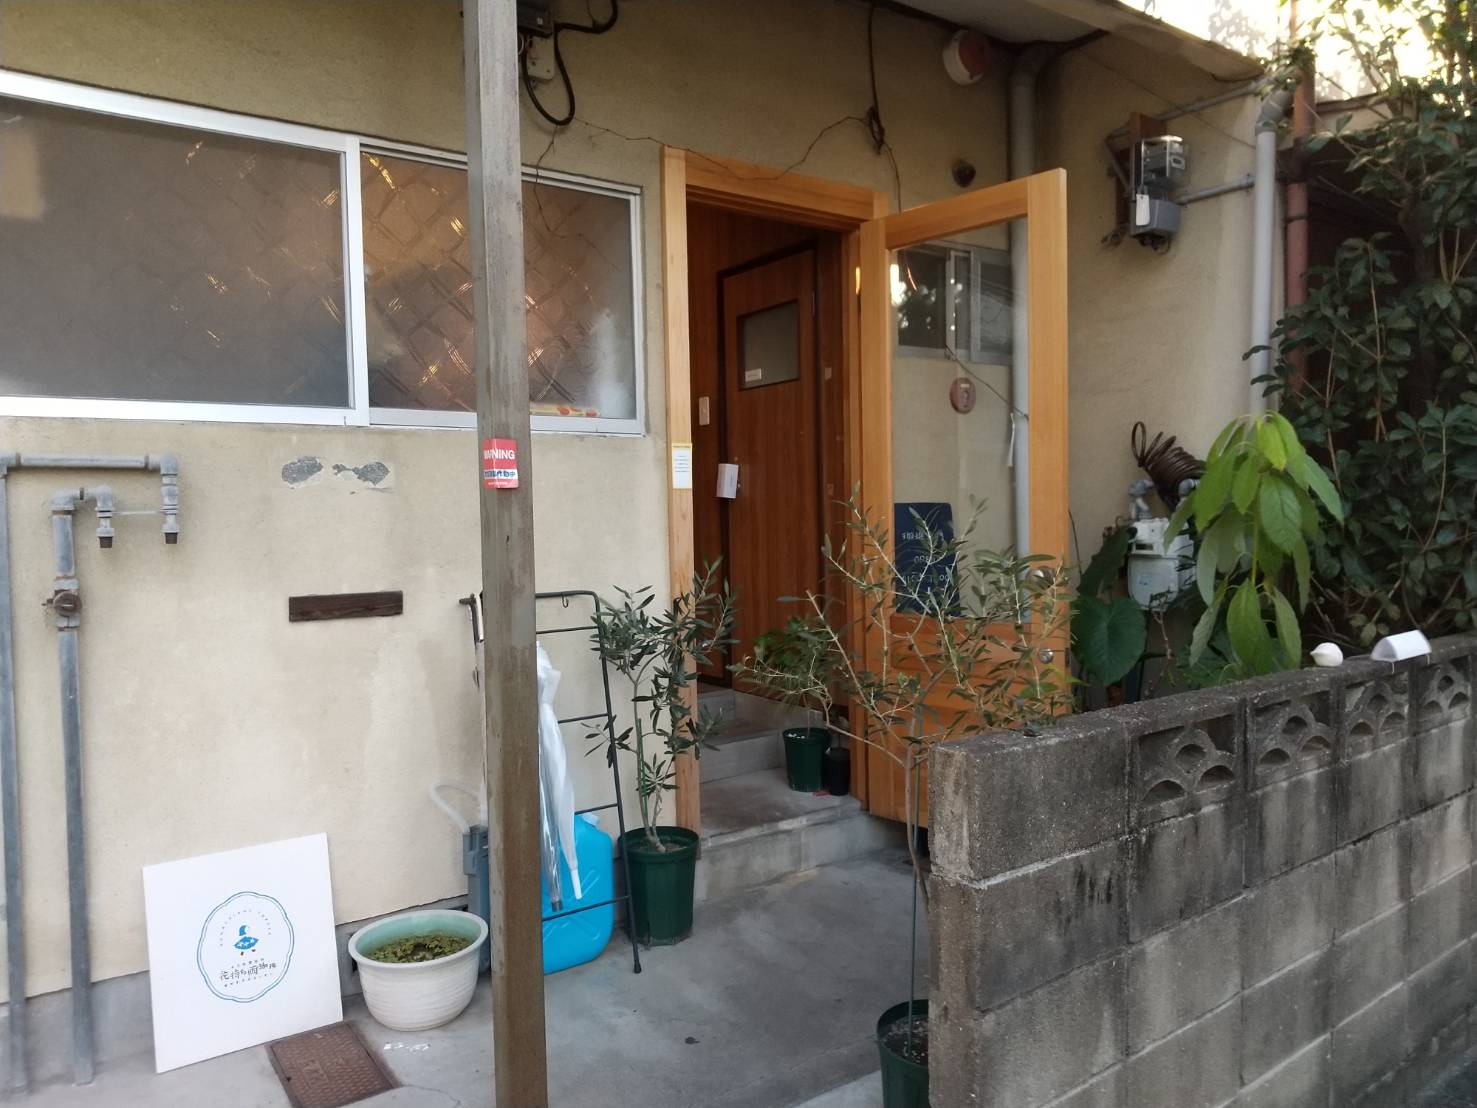 六本松の住宅街の中にある自家焙煎コーヒー屋さん『花待ち雨珈琲』